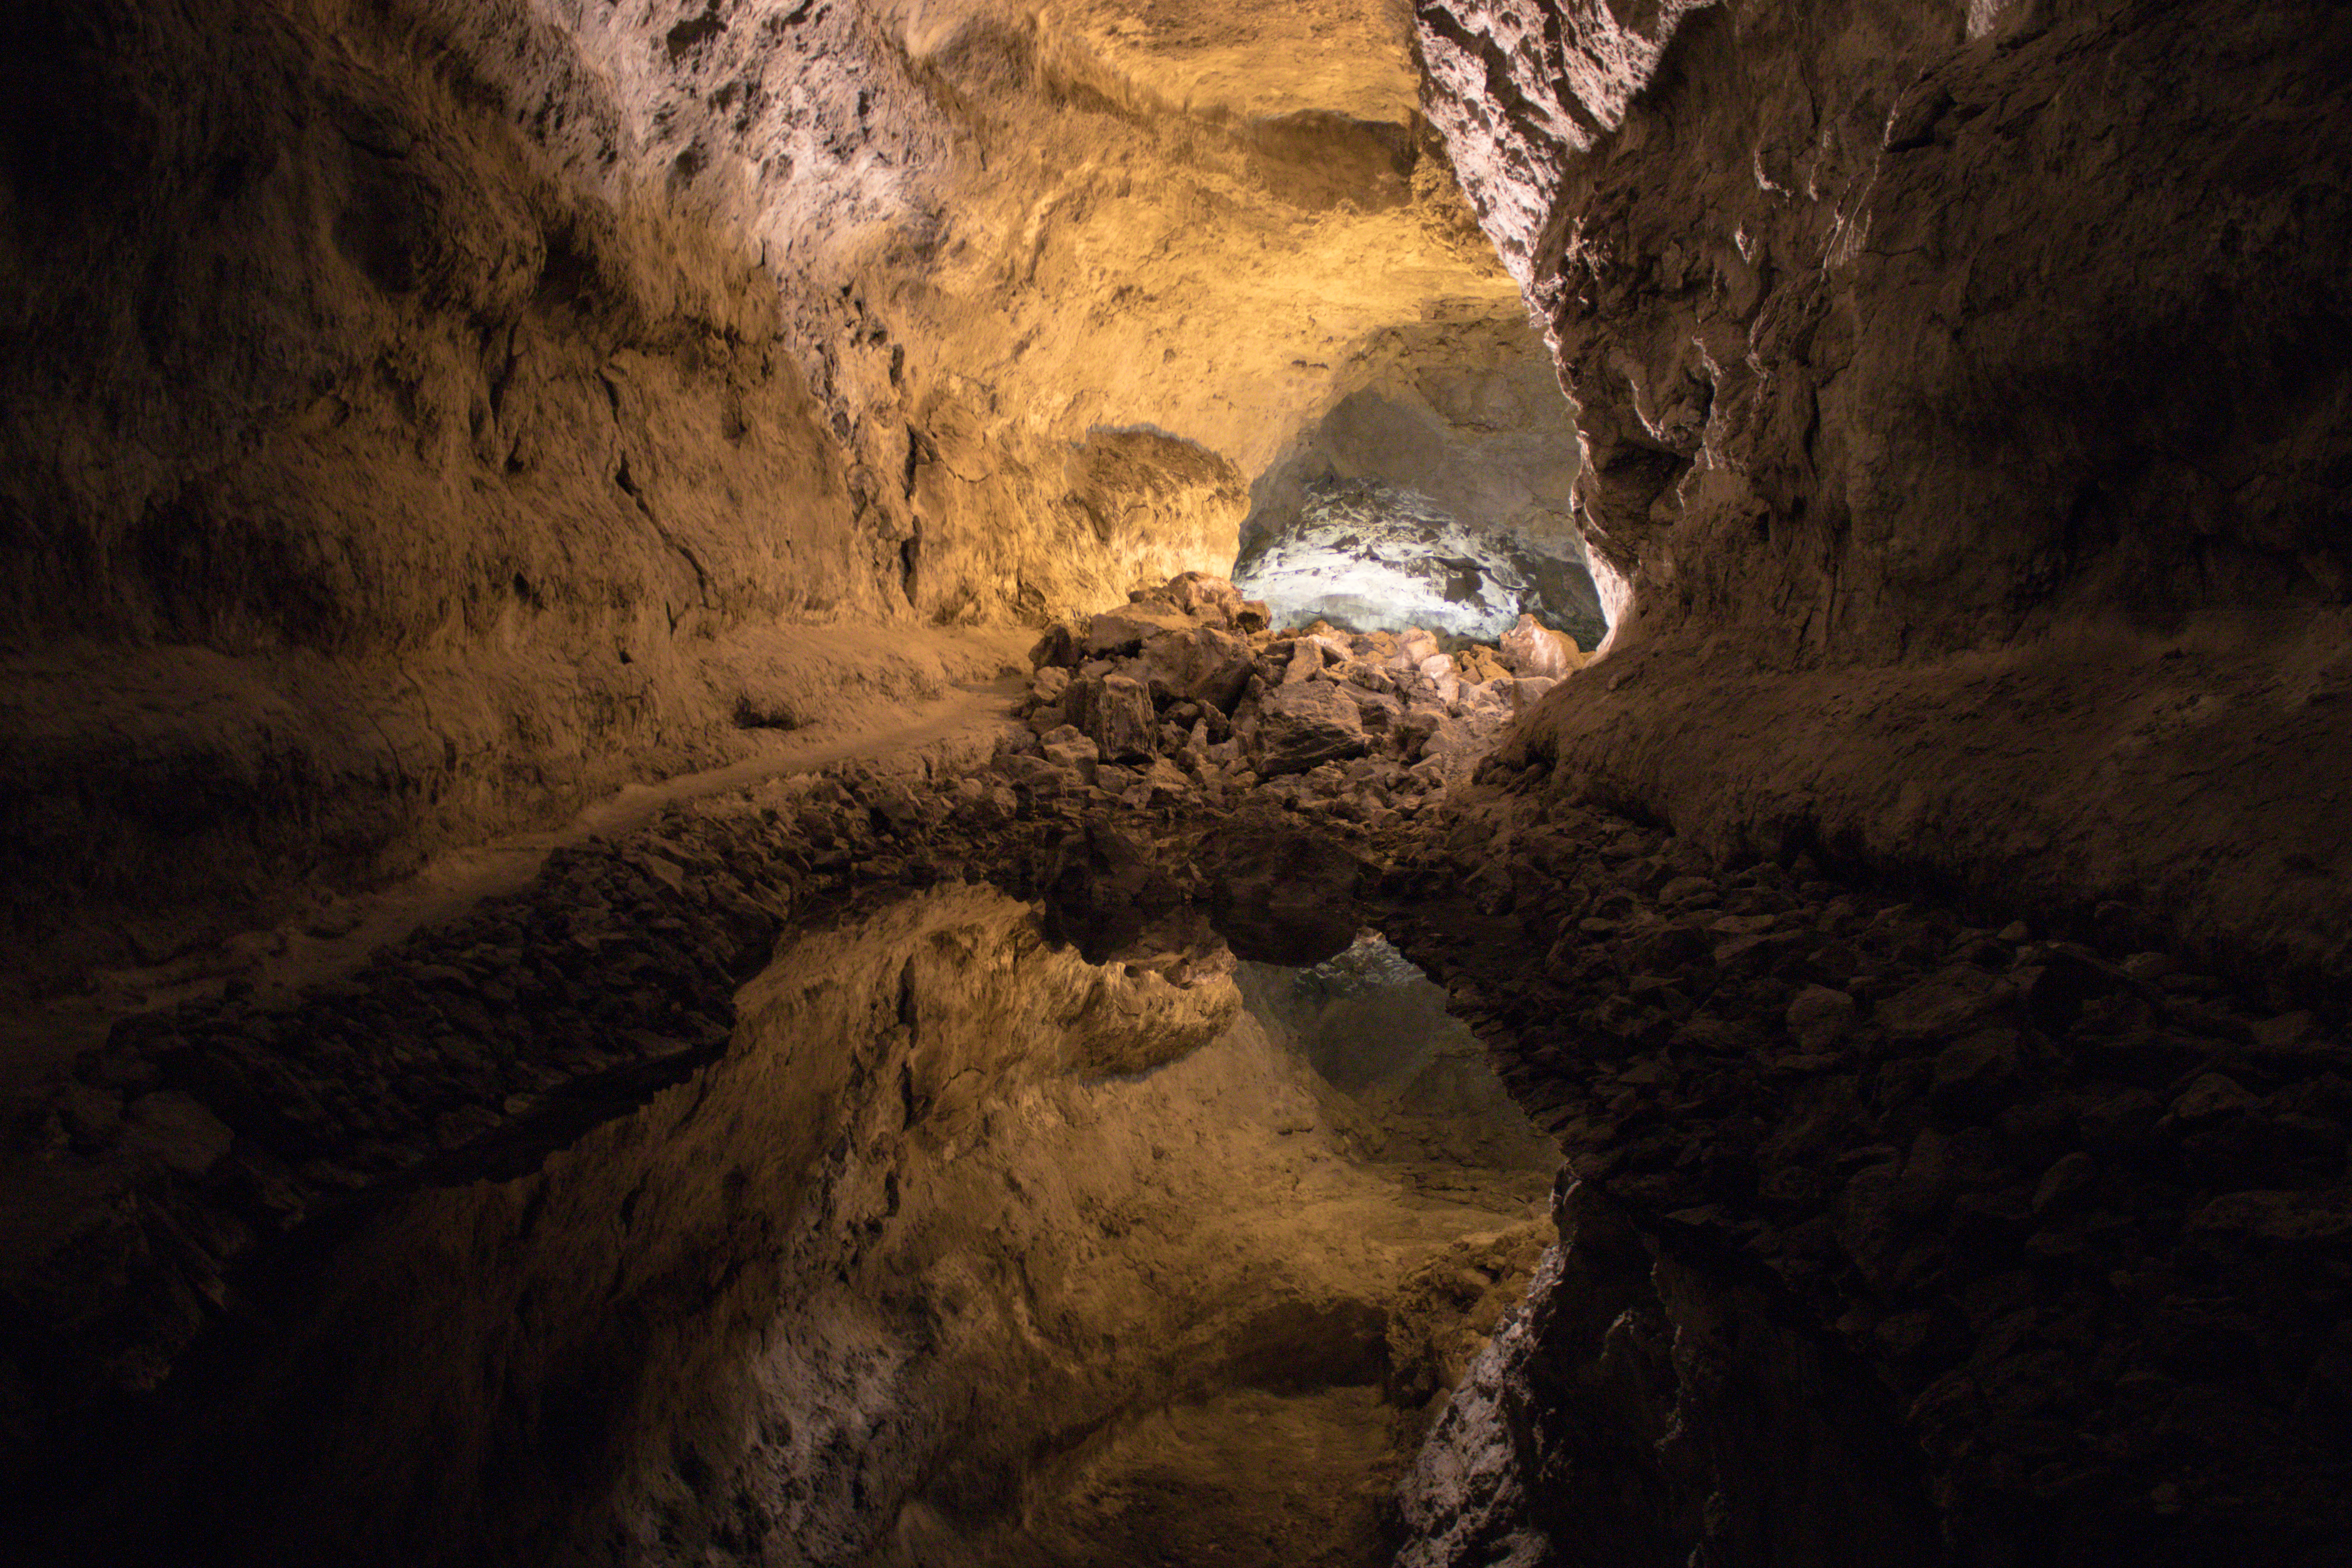 An underground discovery in the cueva de los verdes, Lanzarote